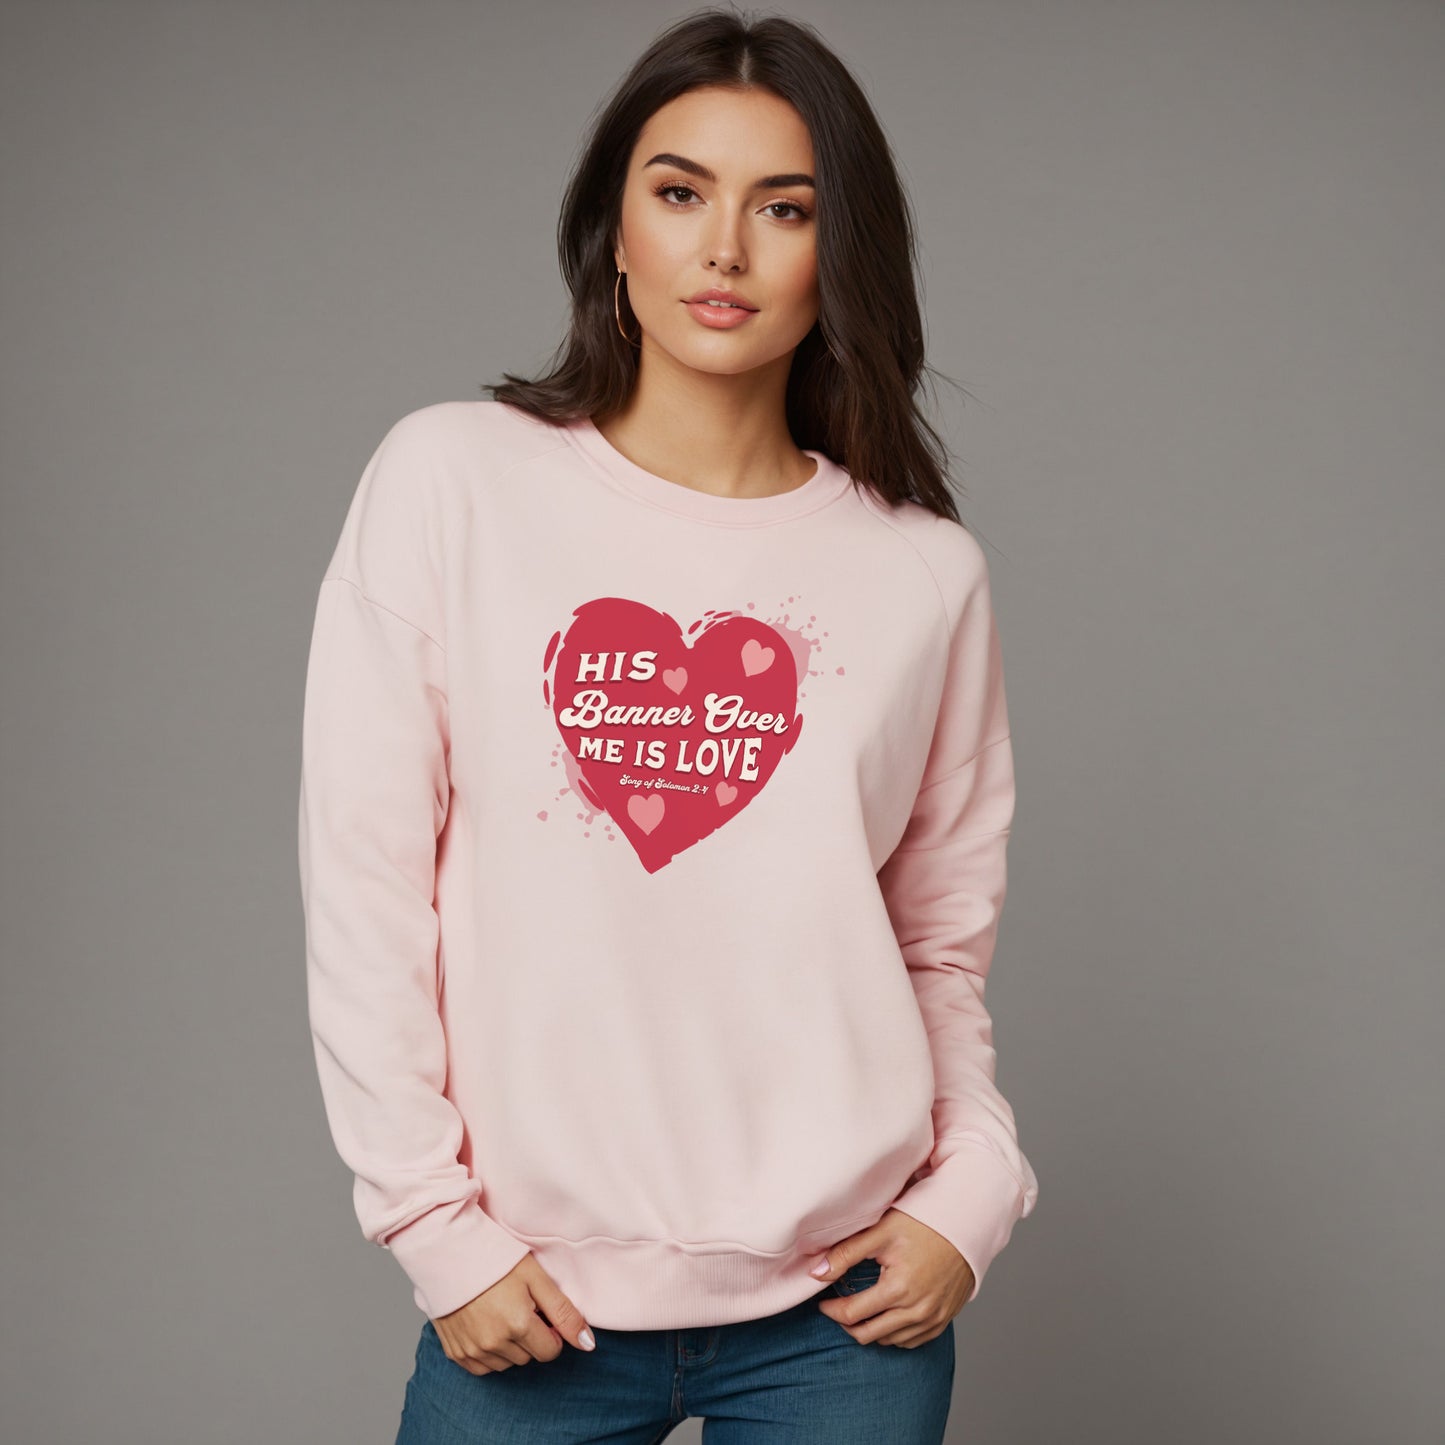 His Banner Over Me is Love sweatshirt in light pink